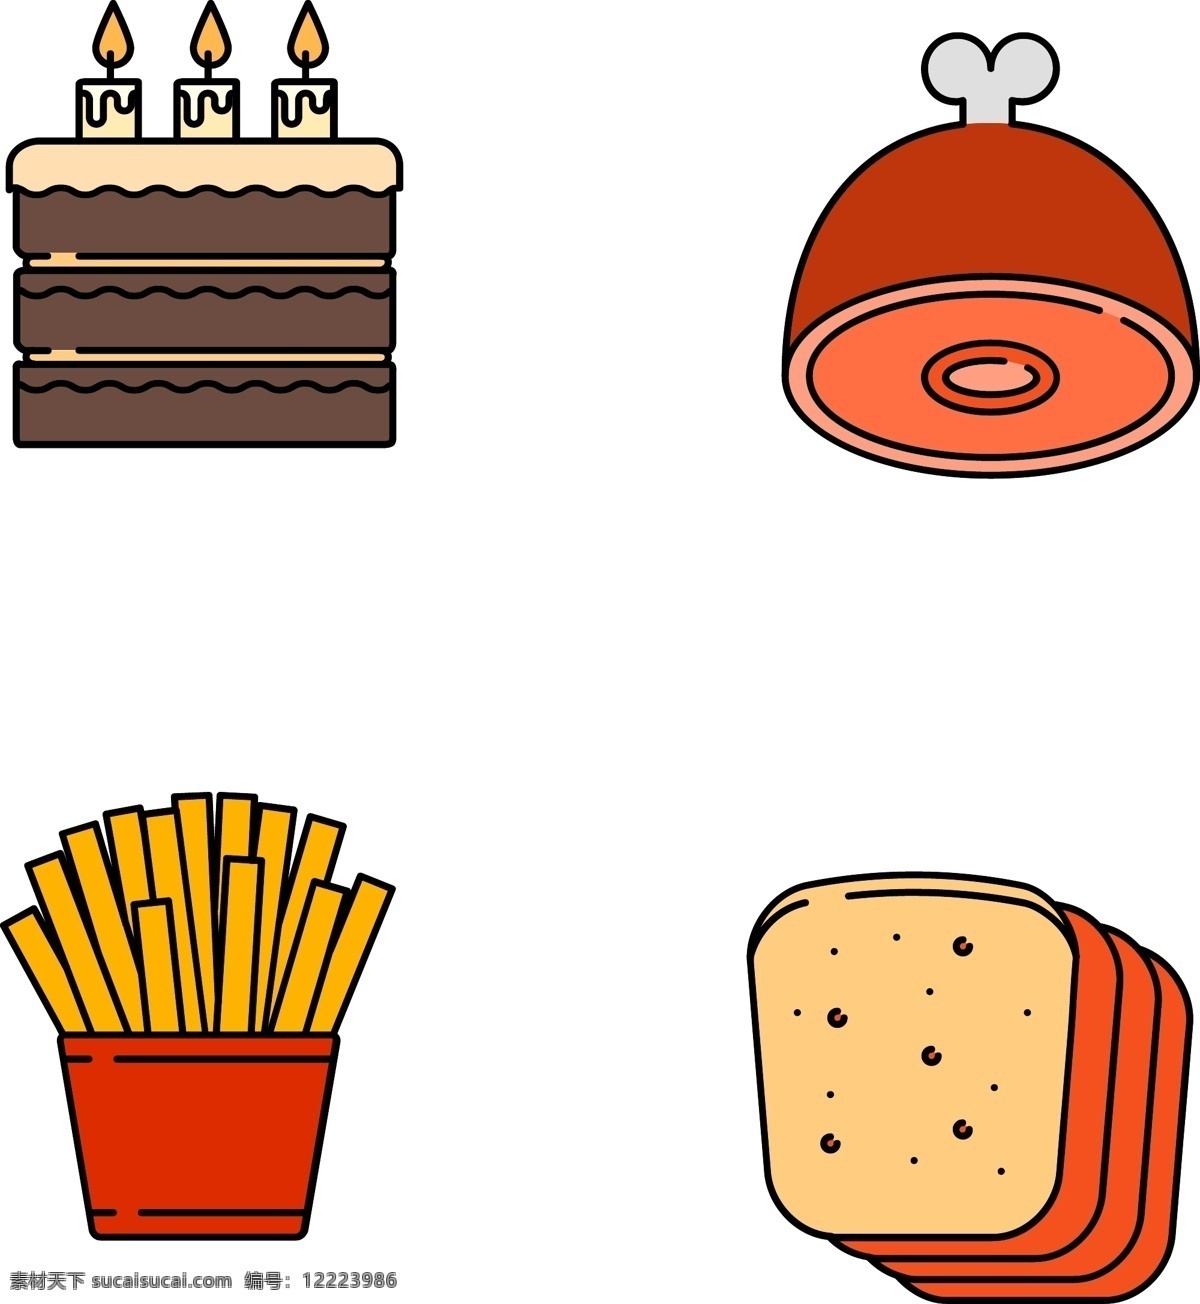 卡通 手绘 食物 食品 图标 卡通手绘 蛋糕 鸡腿 薯条 面包 免抠 png格式 可分开使用 卡通的